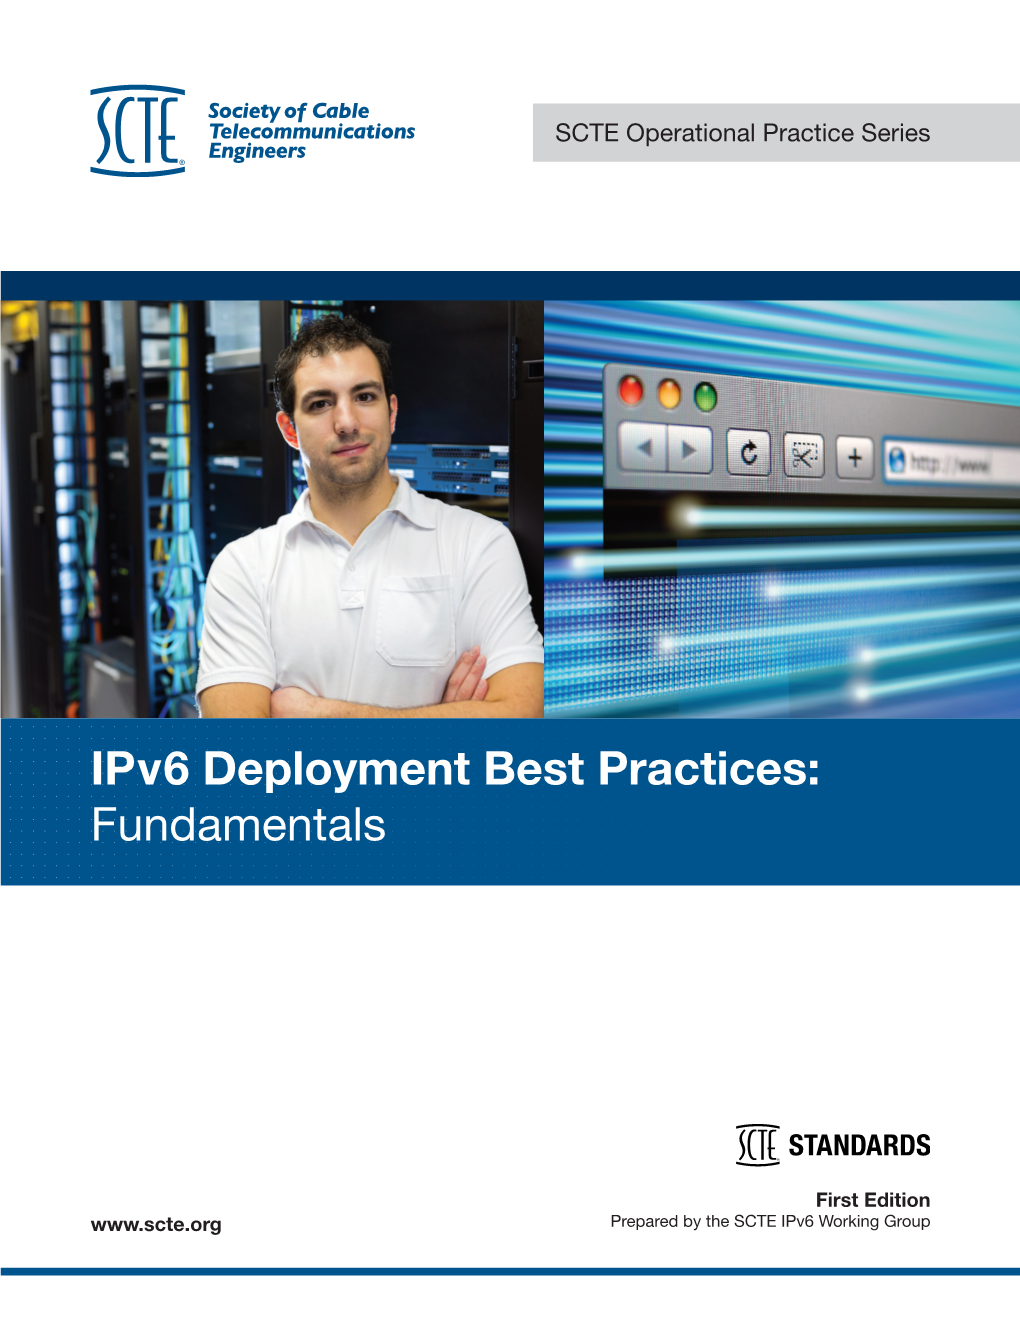 Ipv6 Deployment Best Practices: Fundamentals